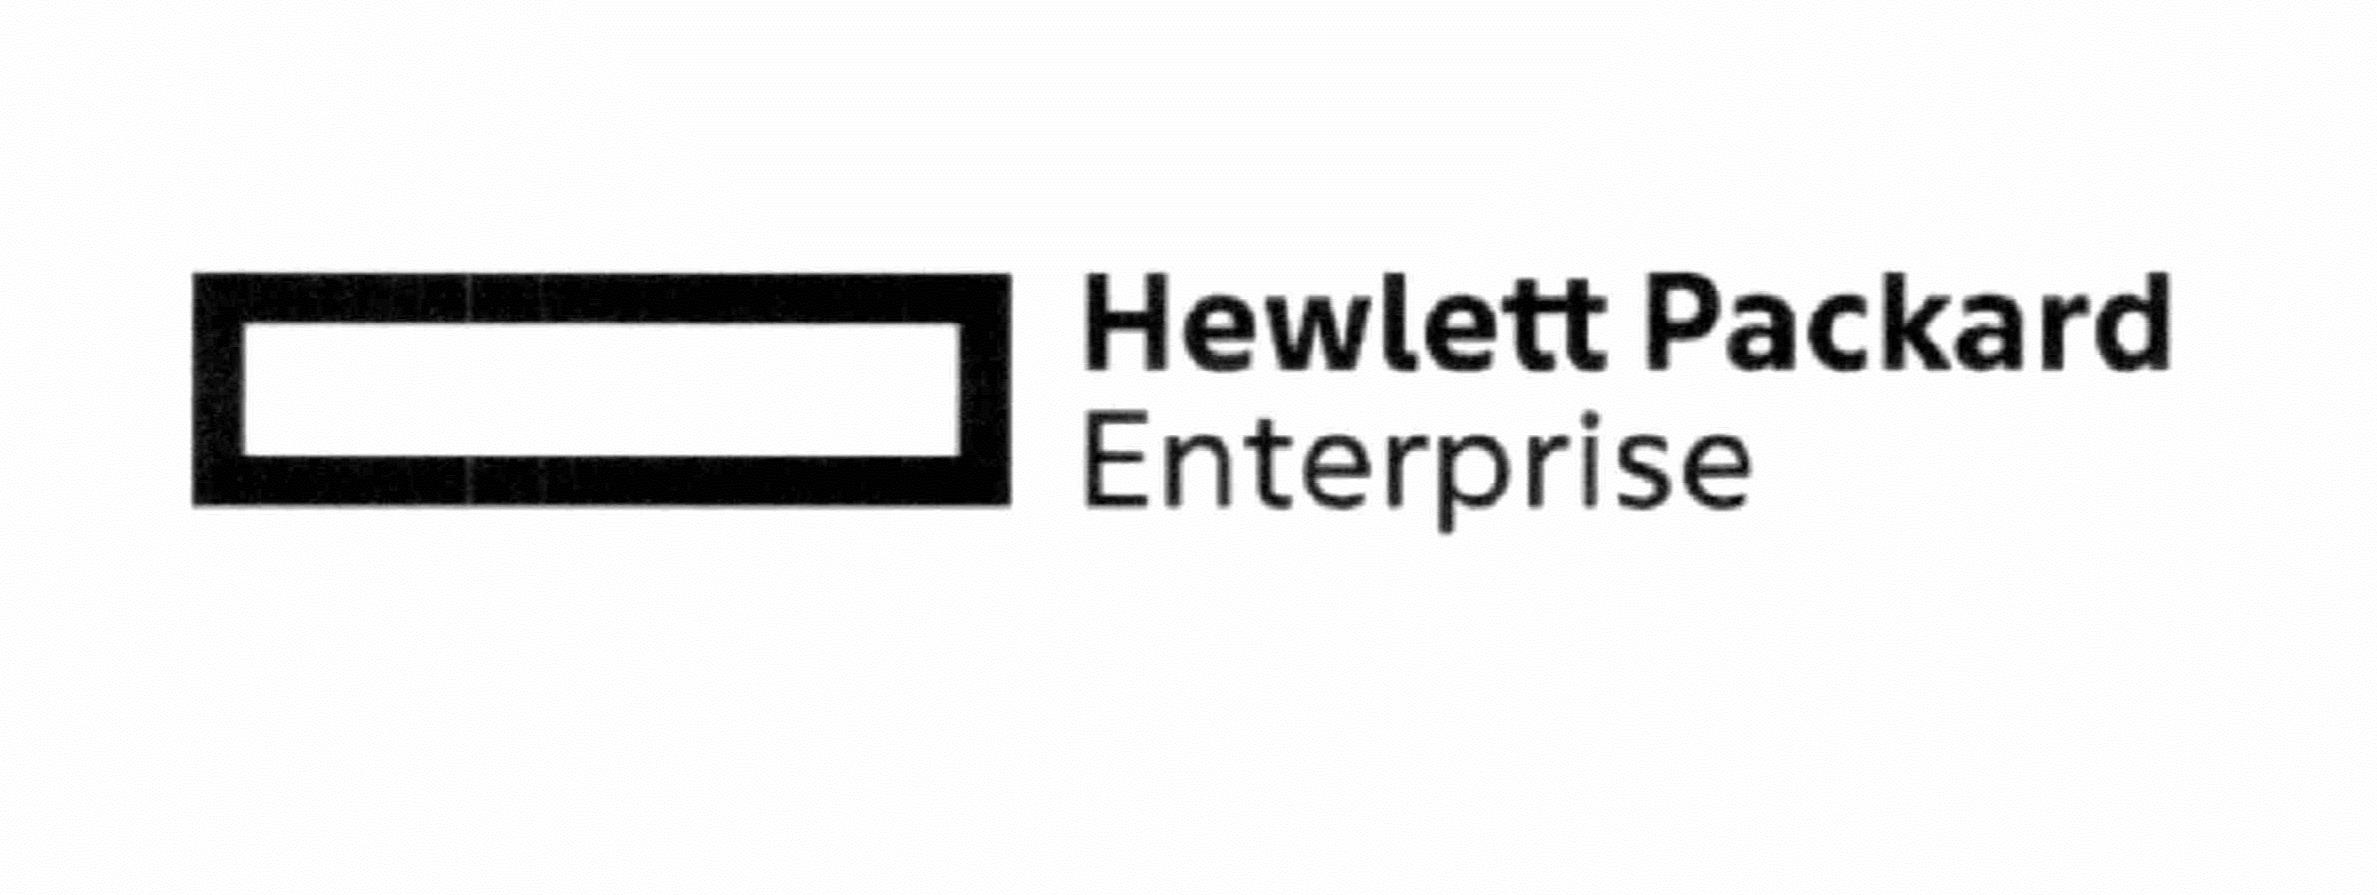 Hewlett packard enterprise. Hewlett Packard Enterprise logo. Марка Hewlett-Packard версия f.33 Дата 30.08.2011. Образец письма Хьюлетт Паккард Энтерпрайз.